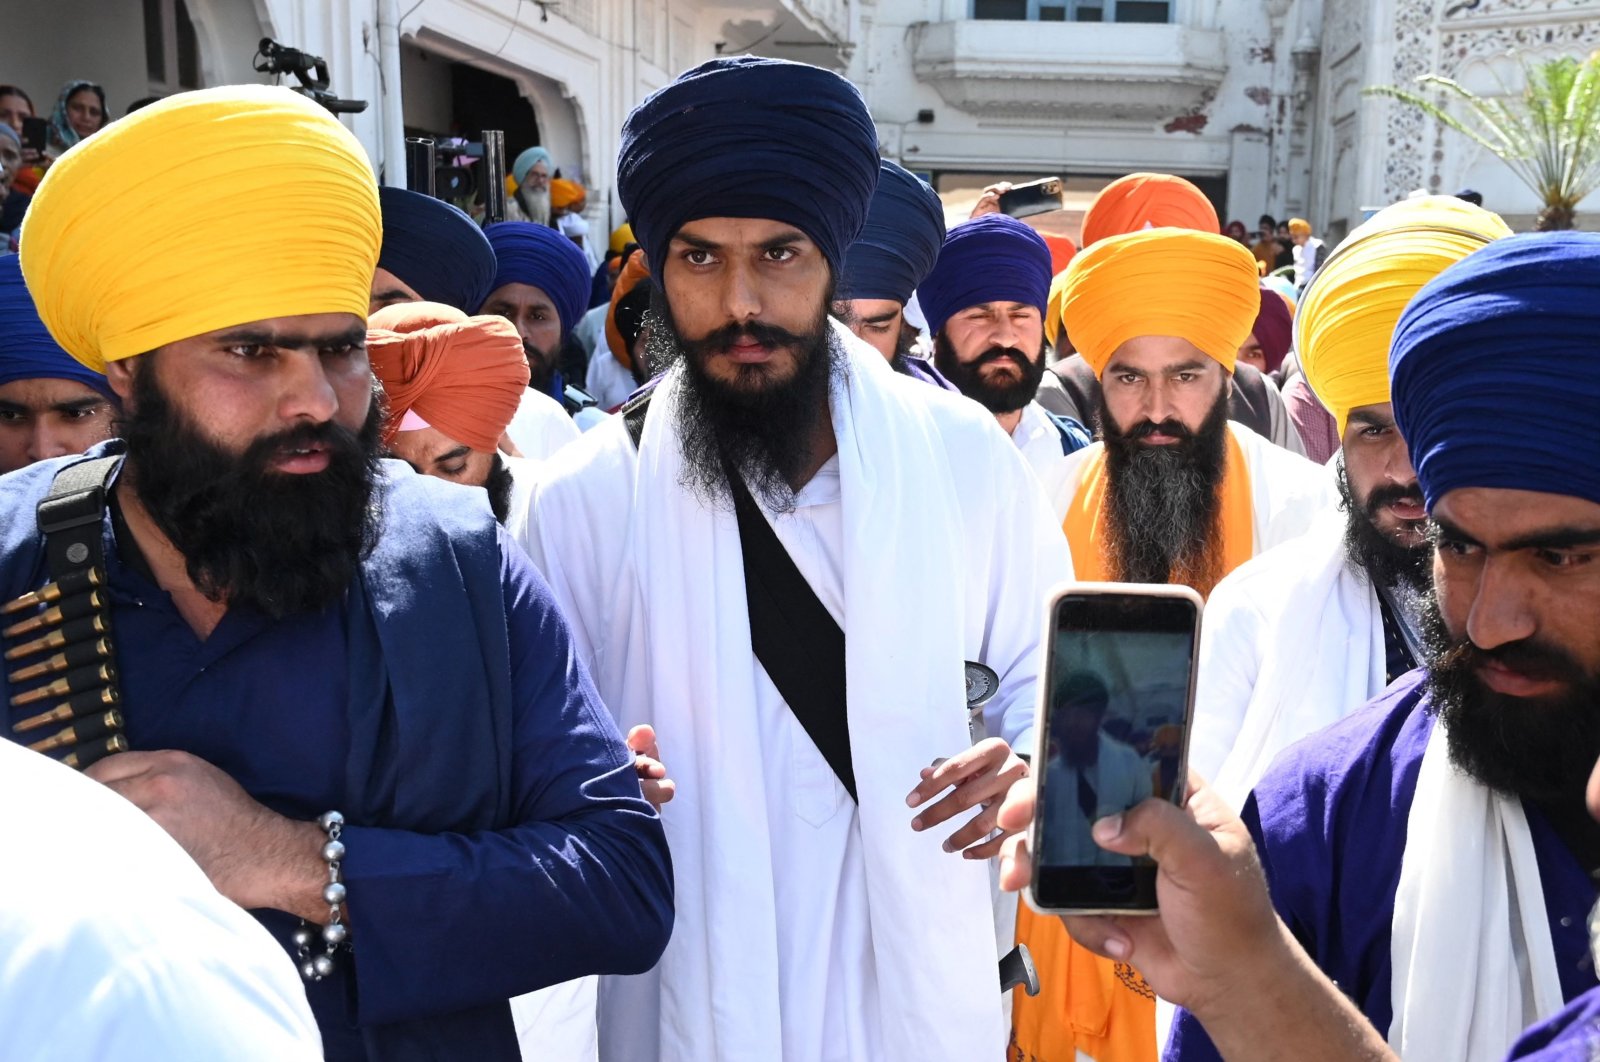 India akhirnya menangkap pemimpin separatis Sikh setelah perburuan selama sebulan